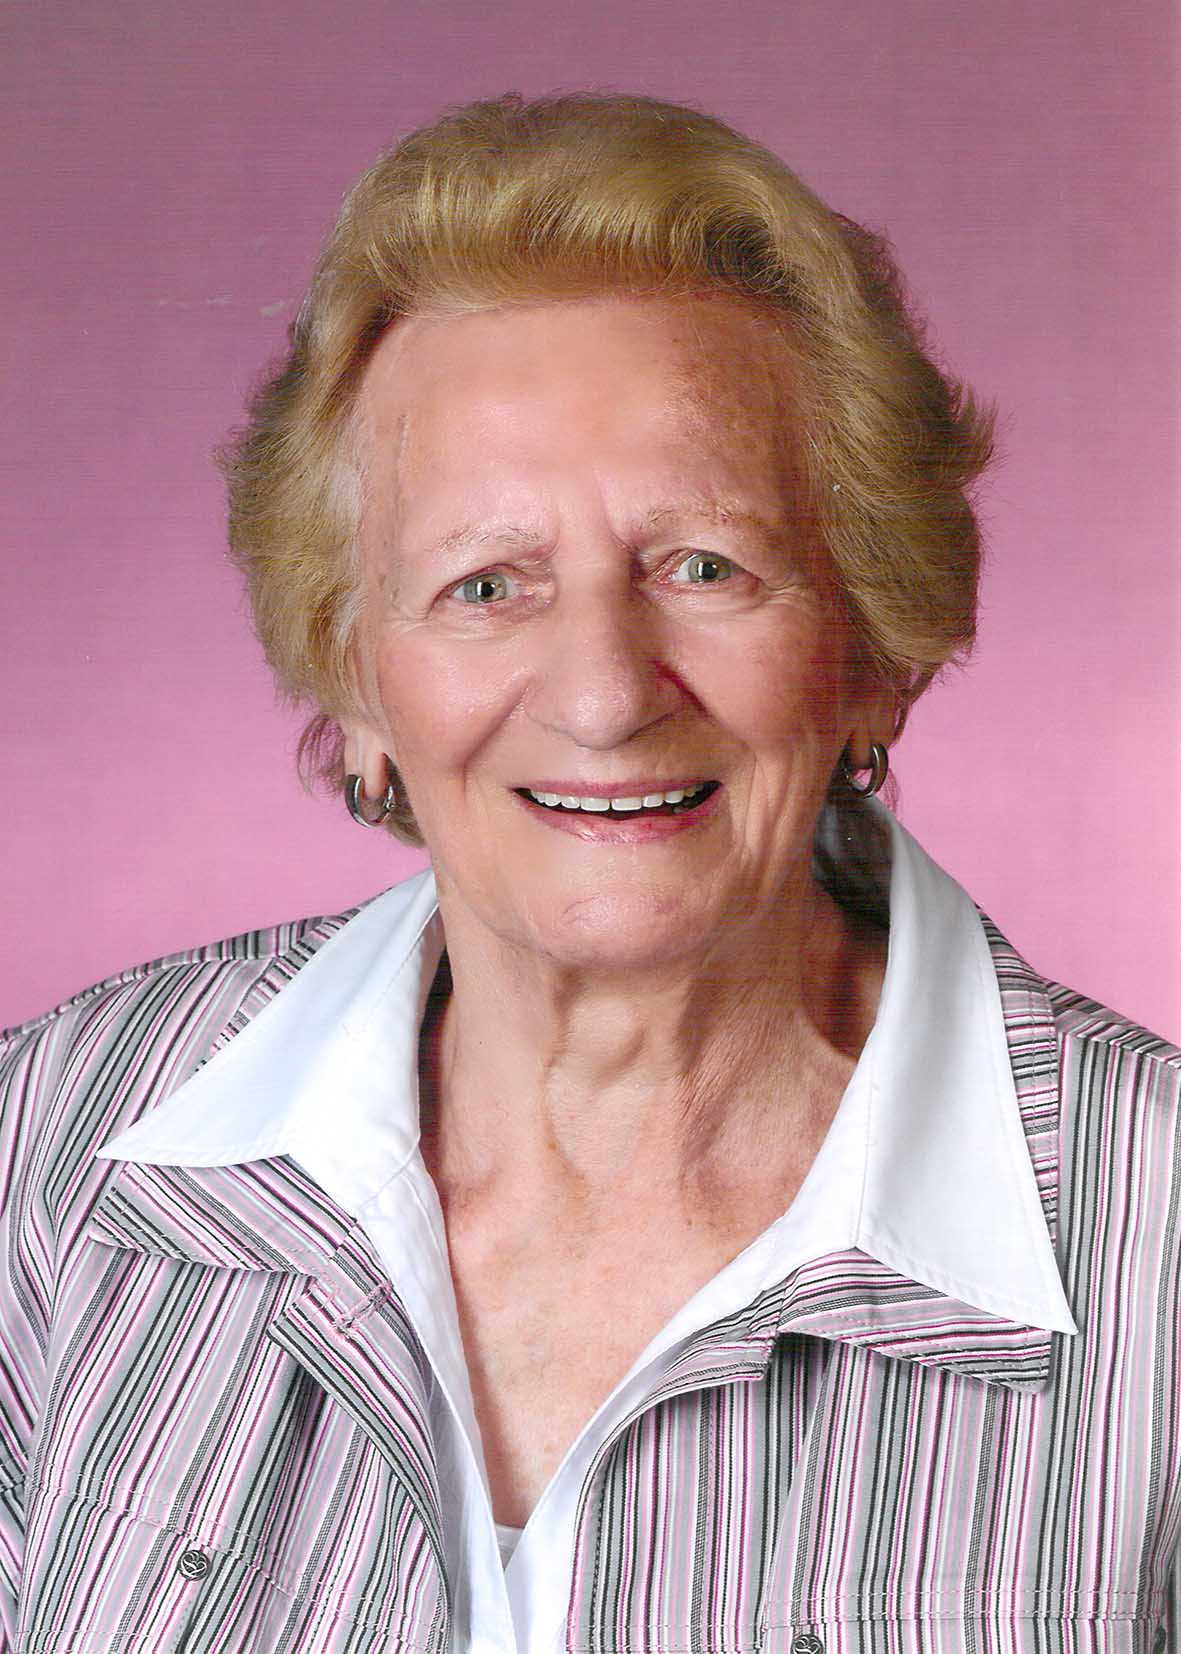 Margareta Schneider (89)